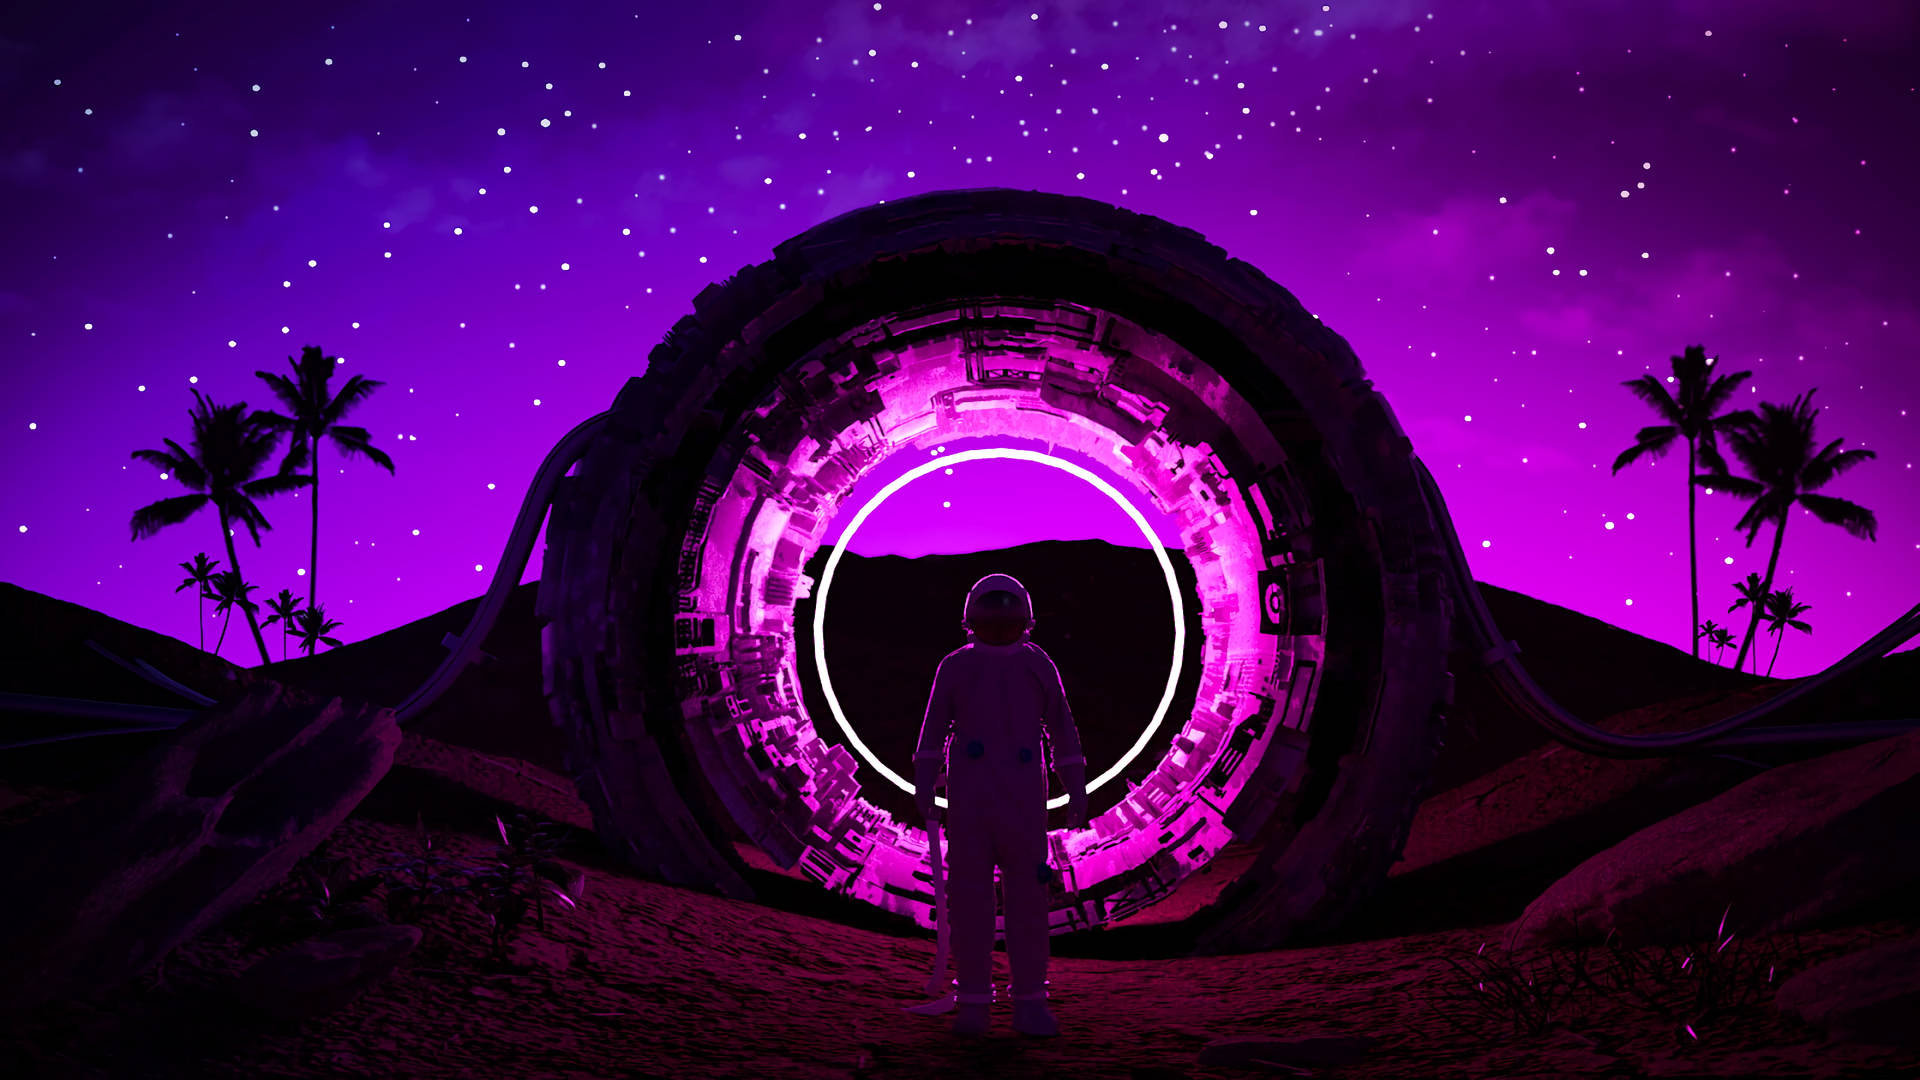 Dark Neon Pink And Purple Astronaut Background